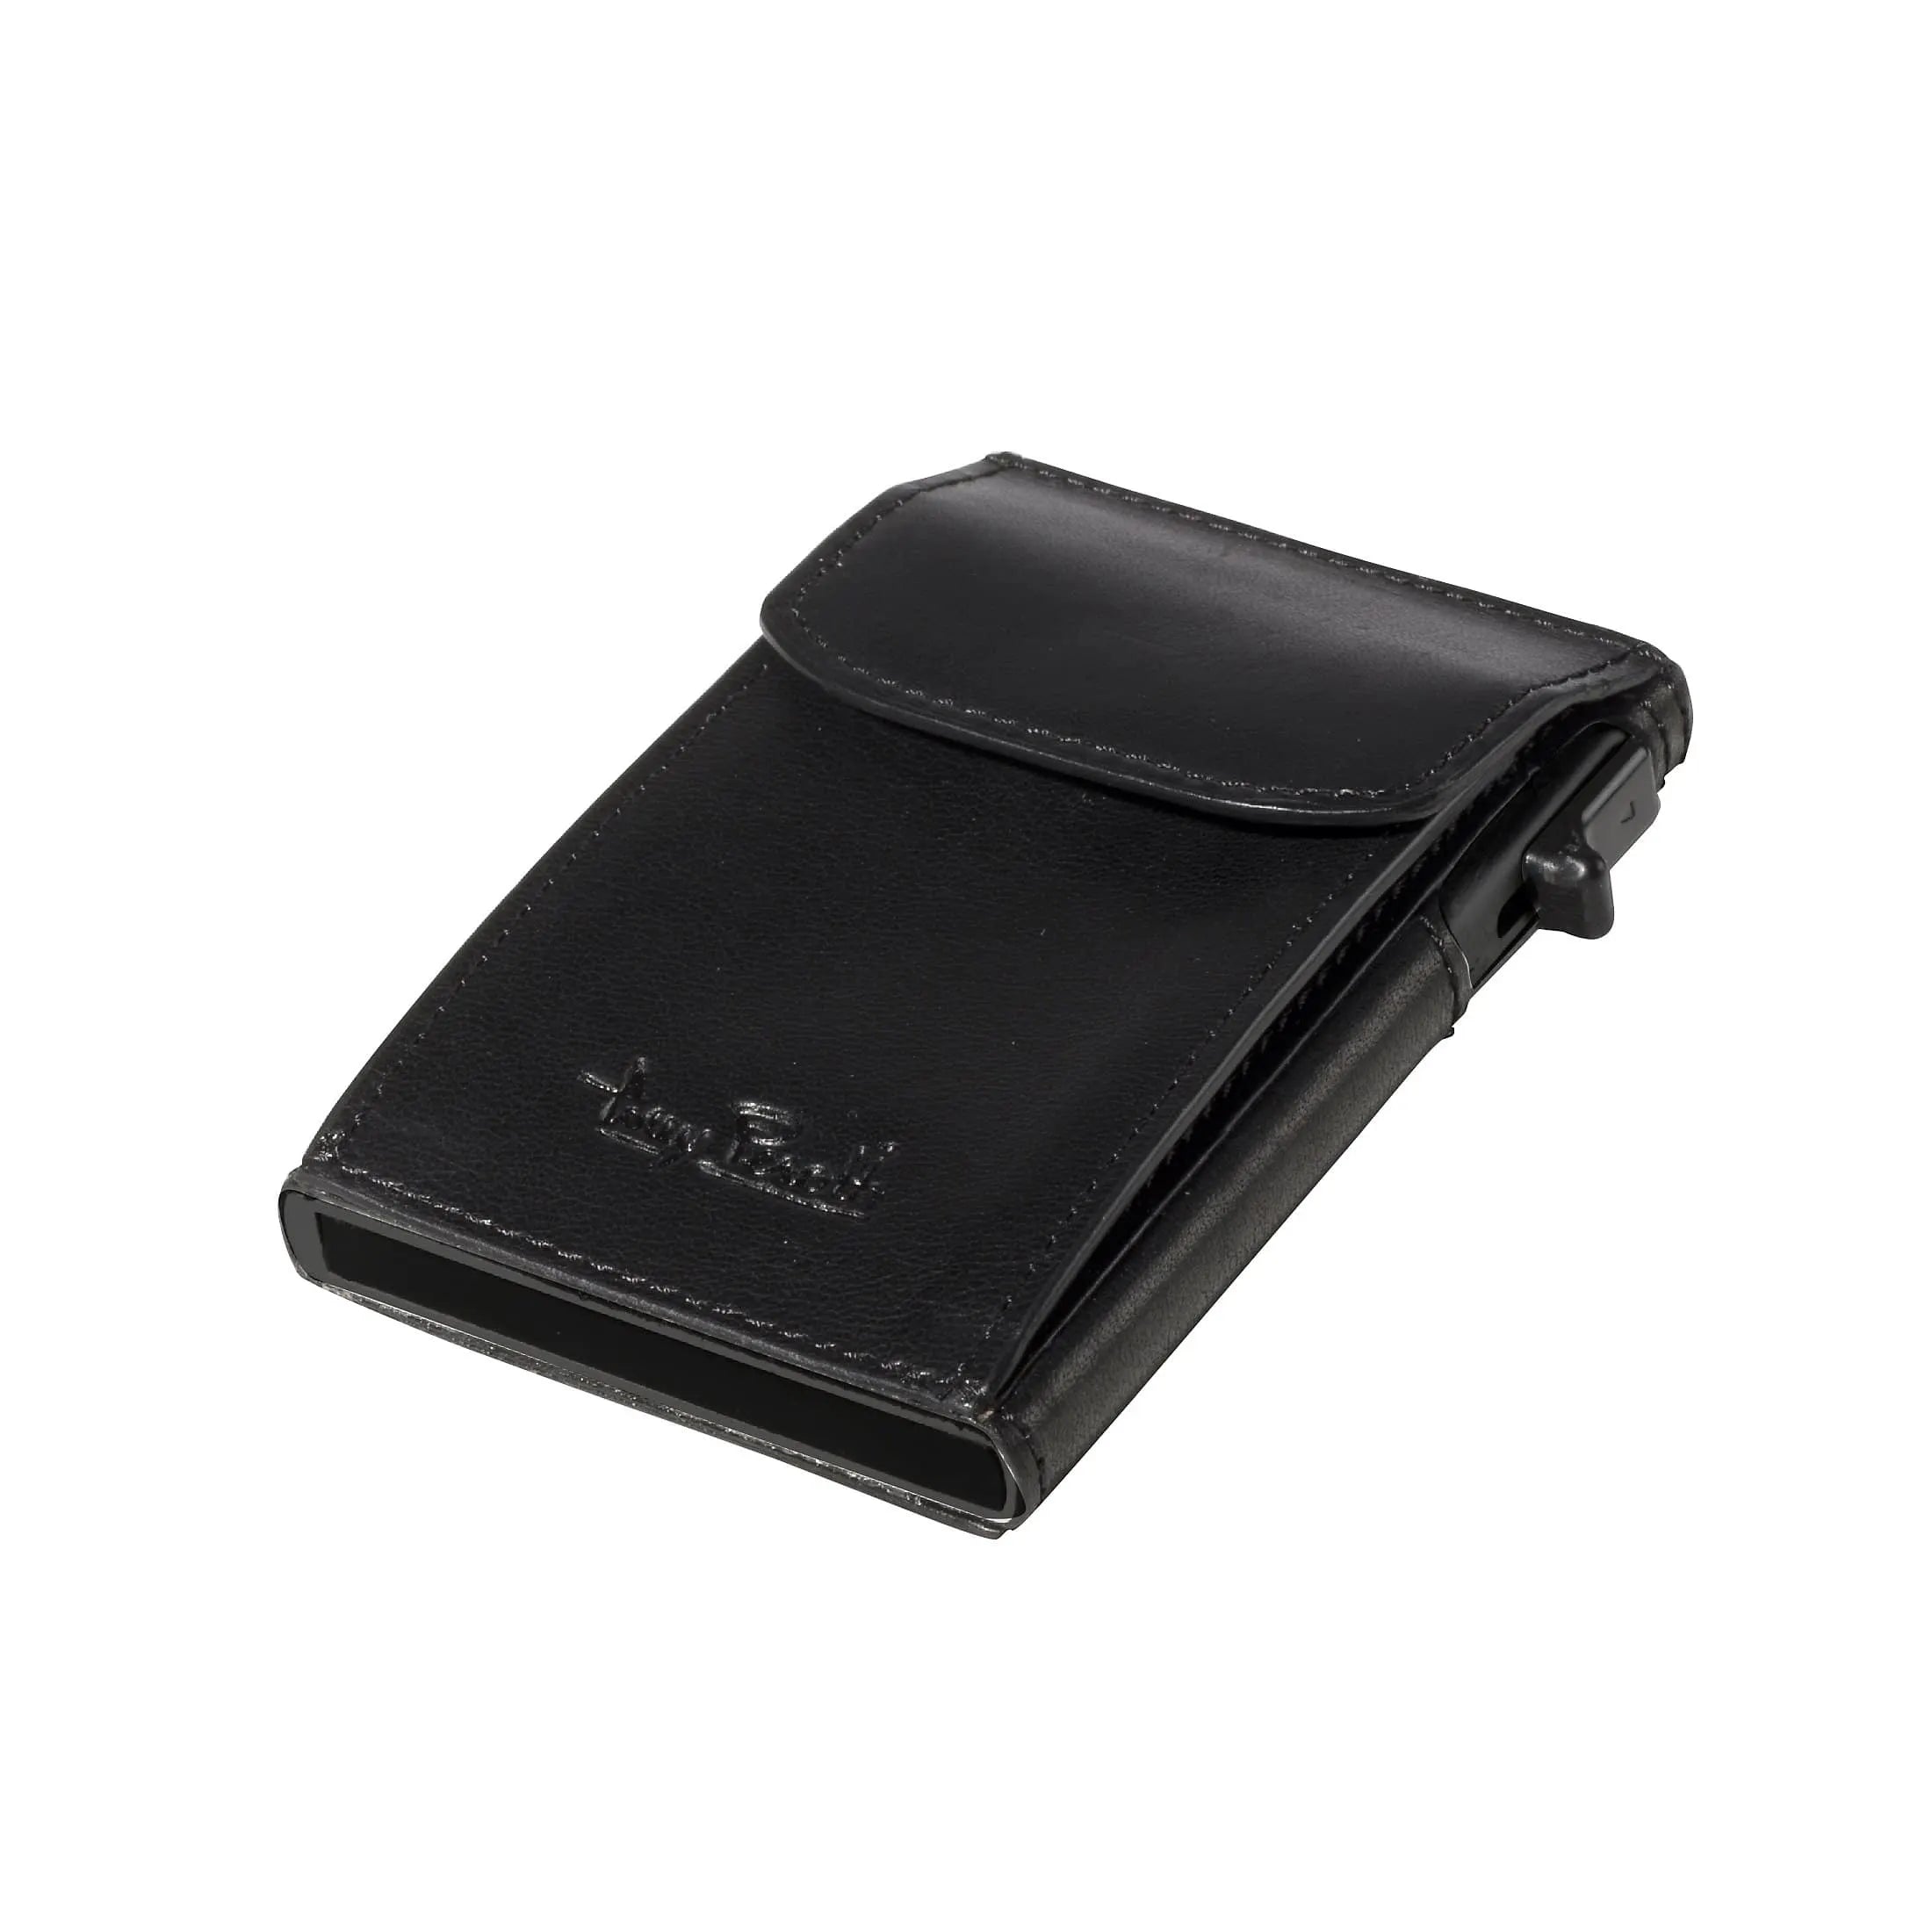 Tony Perotti Furbo porte-cartes de crédit avec protection RFID 9 cm - marron foncé